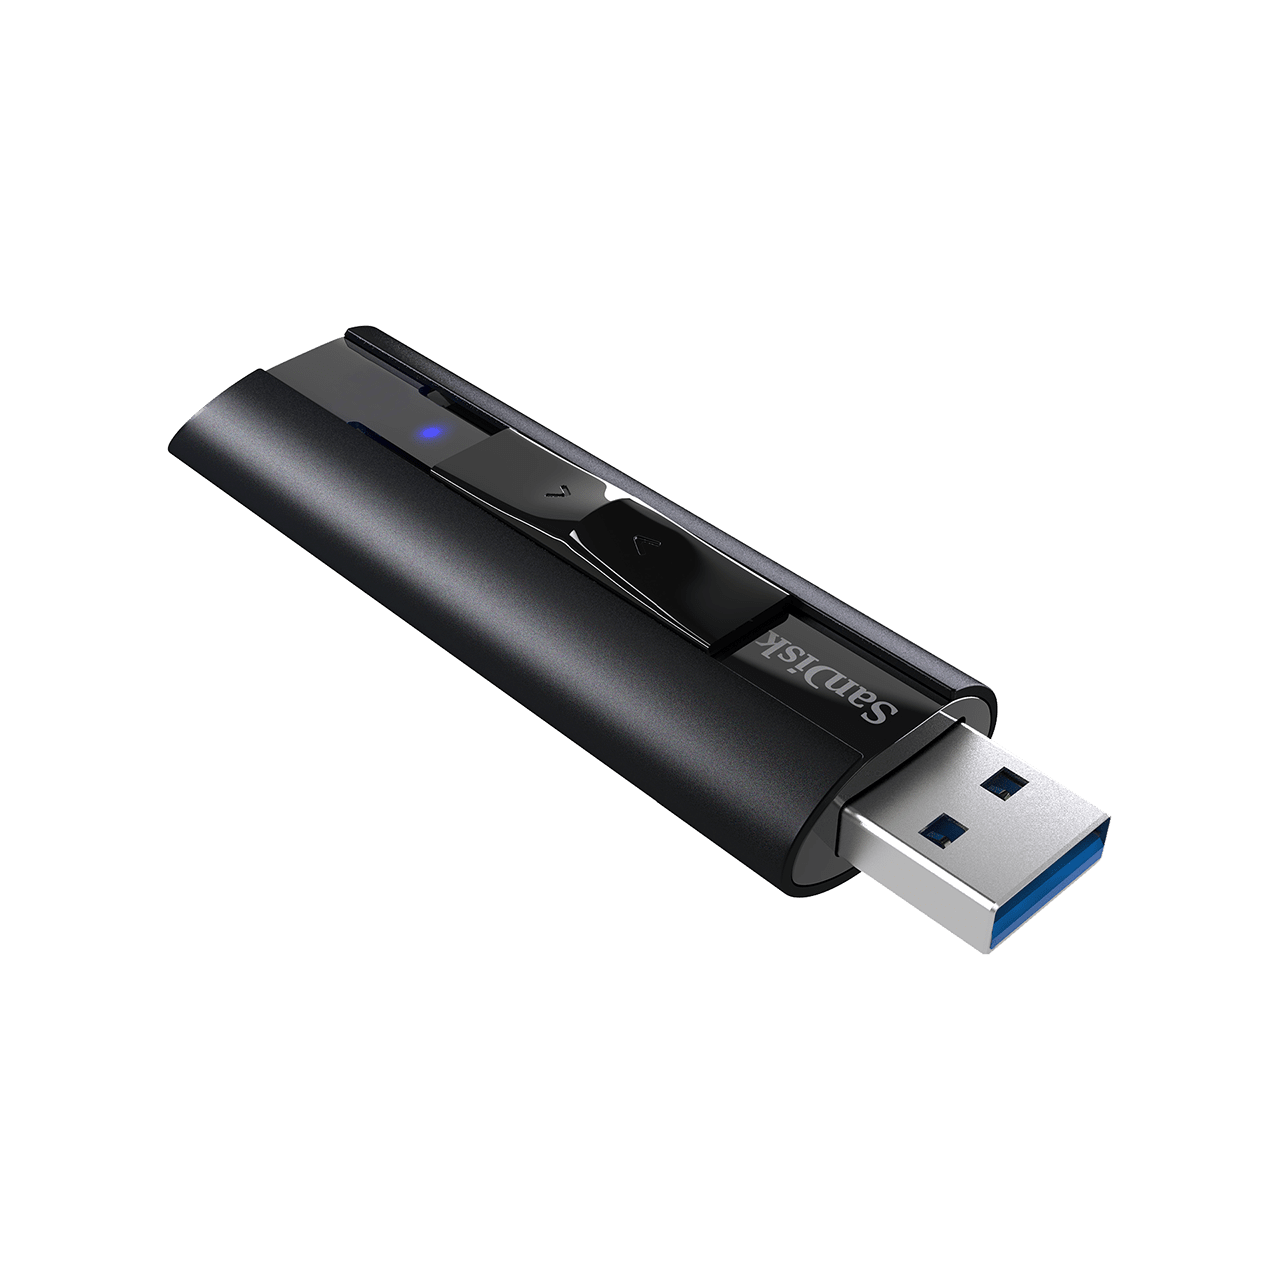 [USB 저장장치] Sandisk Extreme PRO USB 3.2 플래시 드라이브 CZ880 128GB